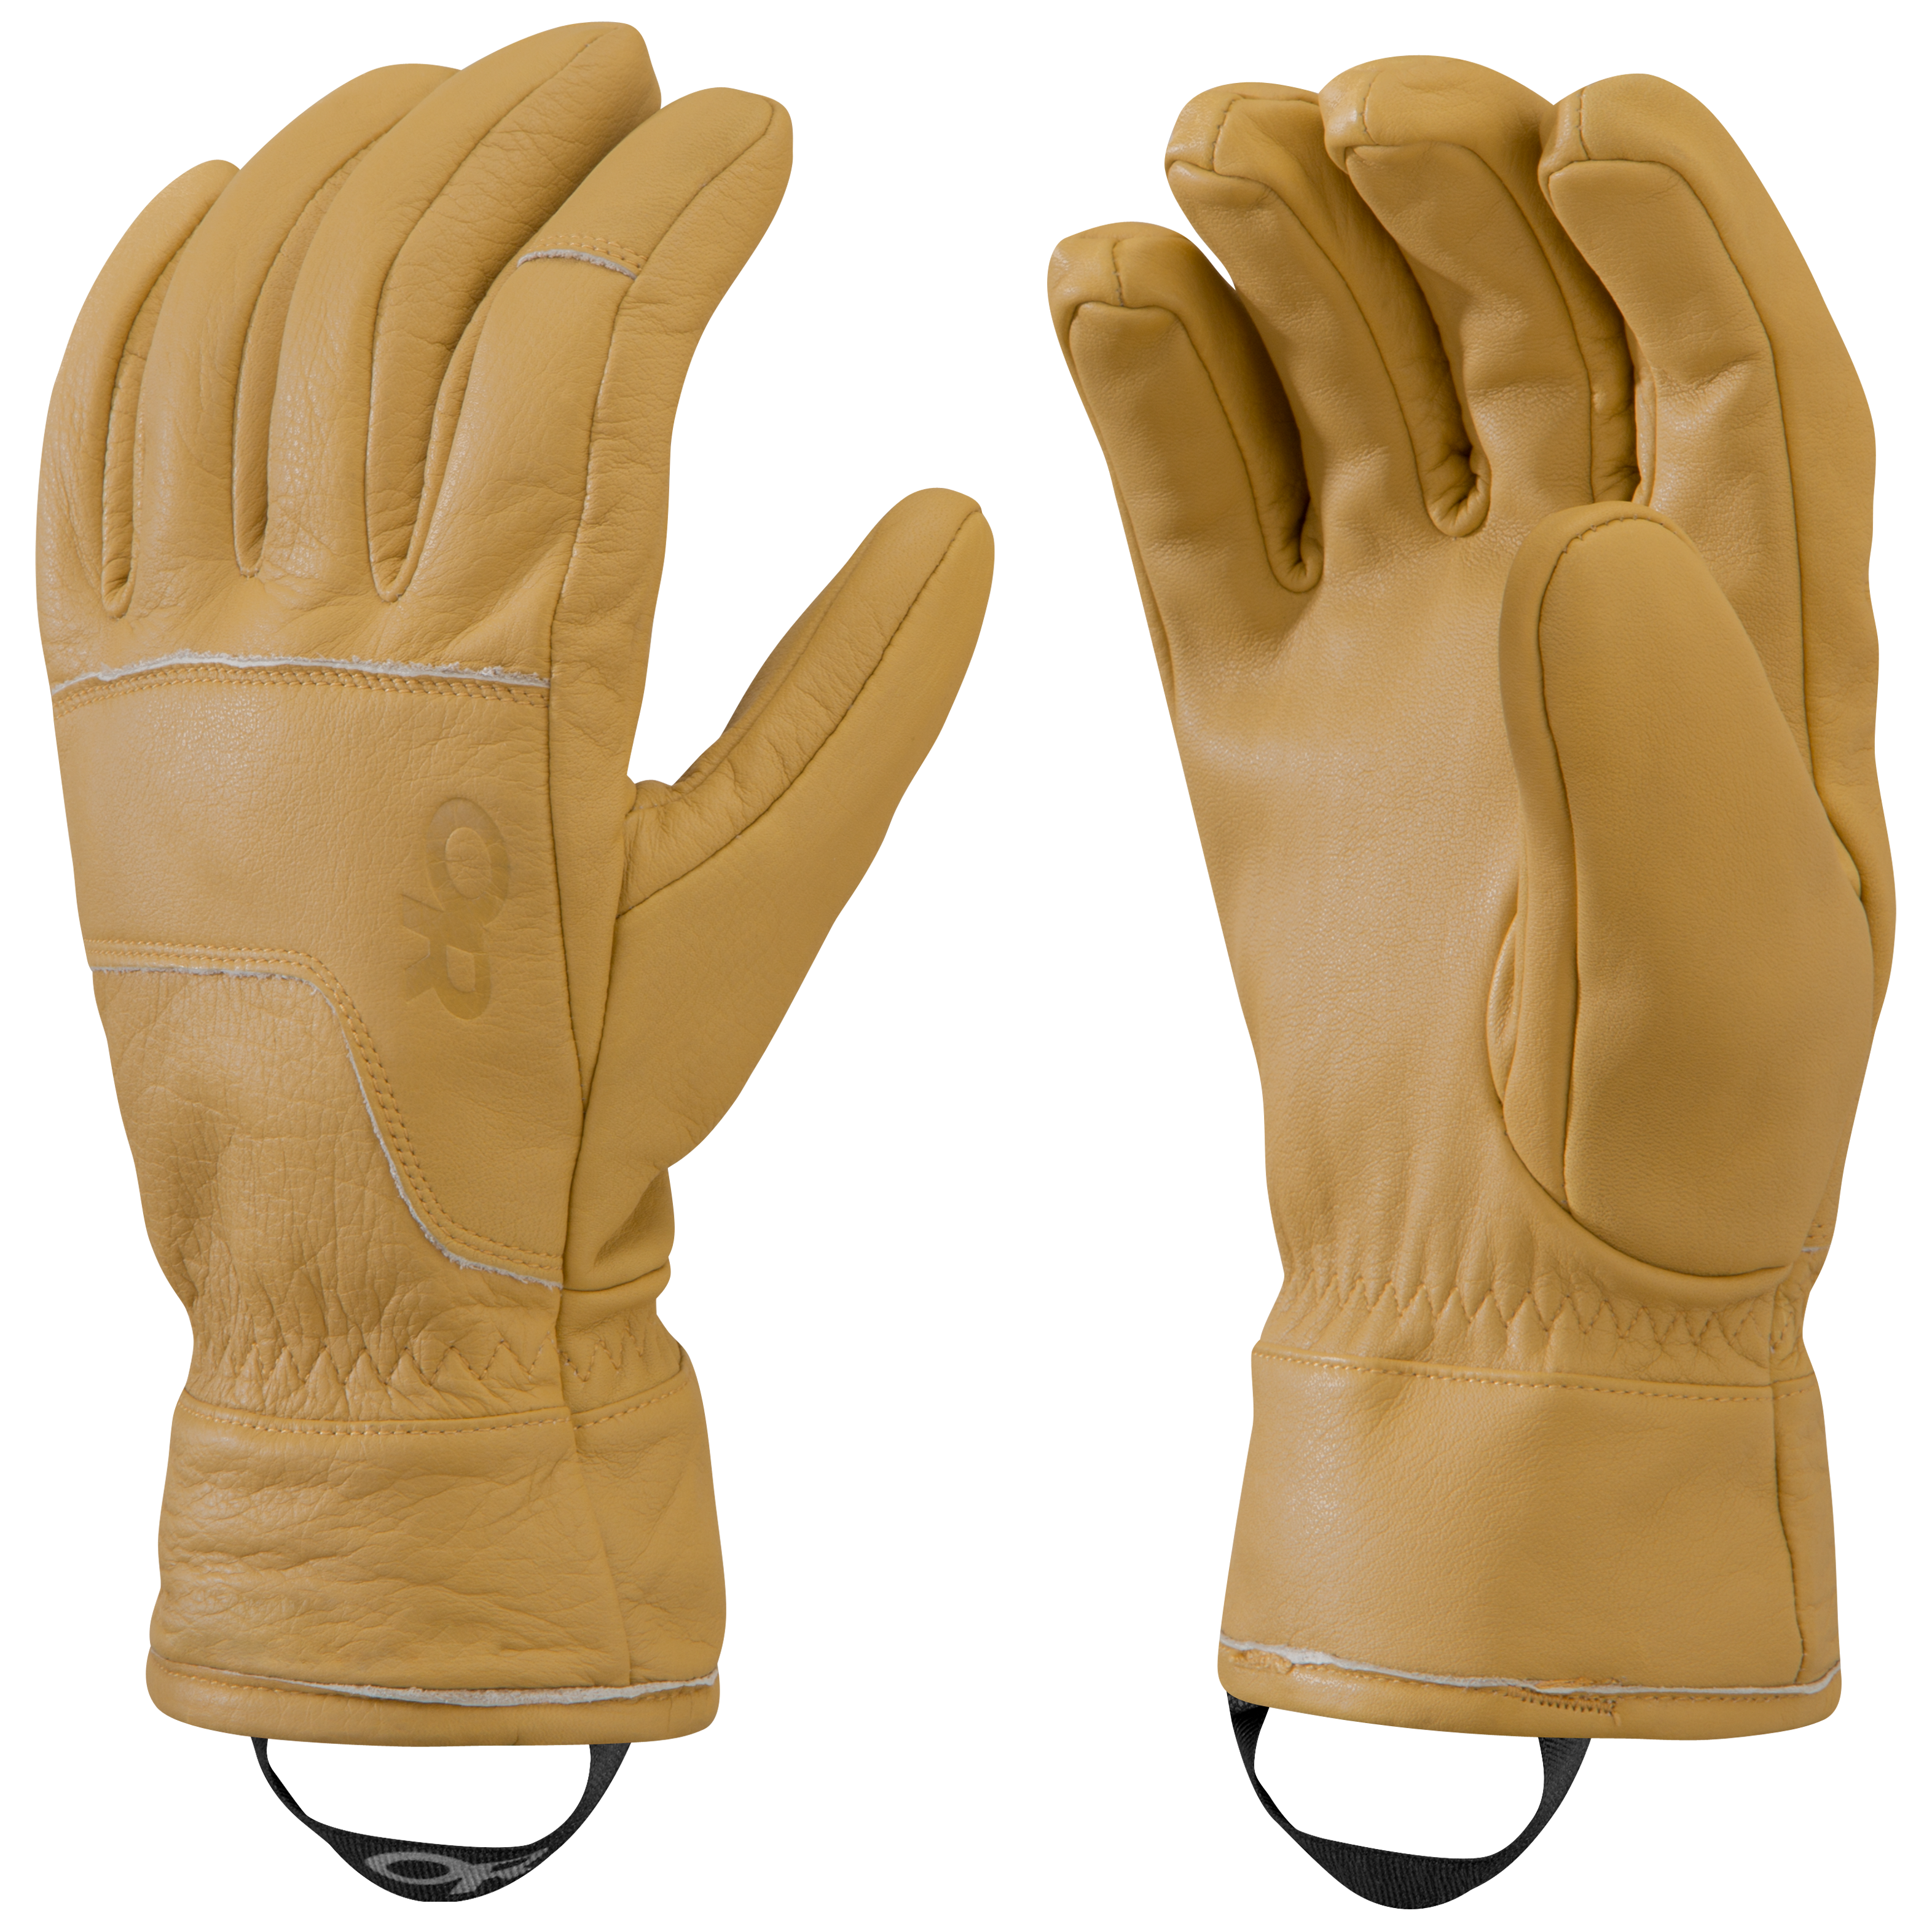 A/V Work Gloves